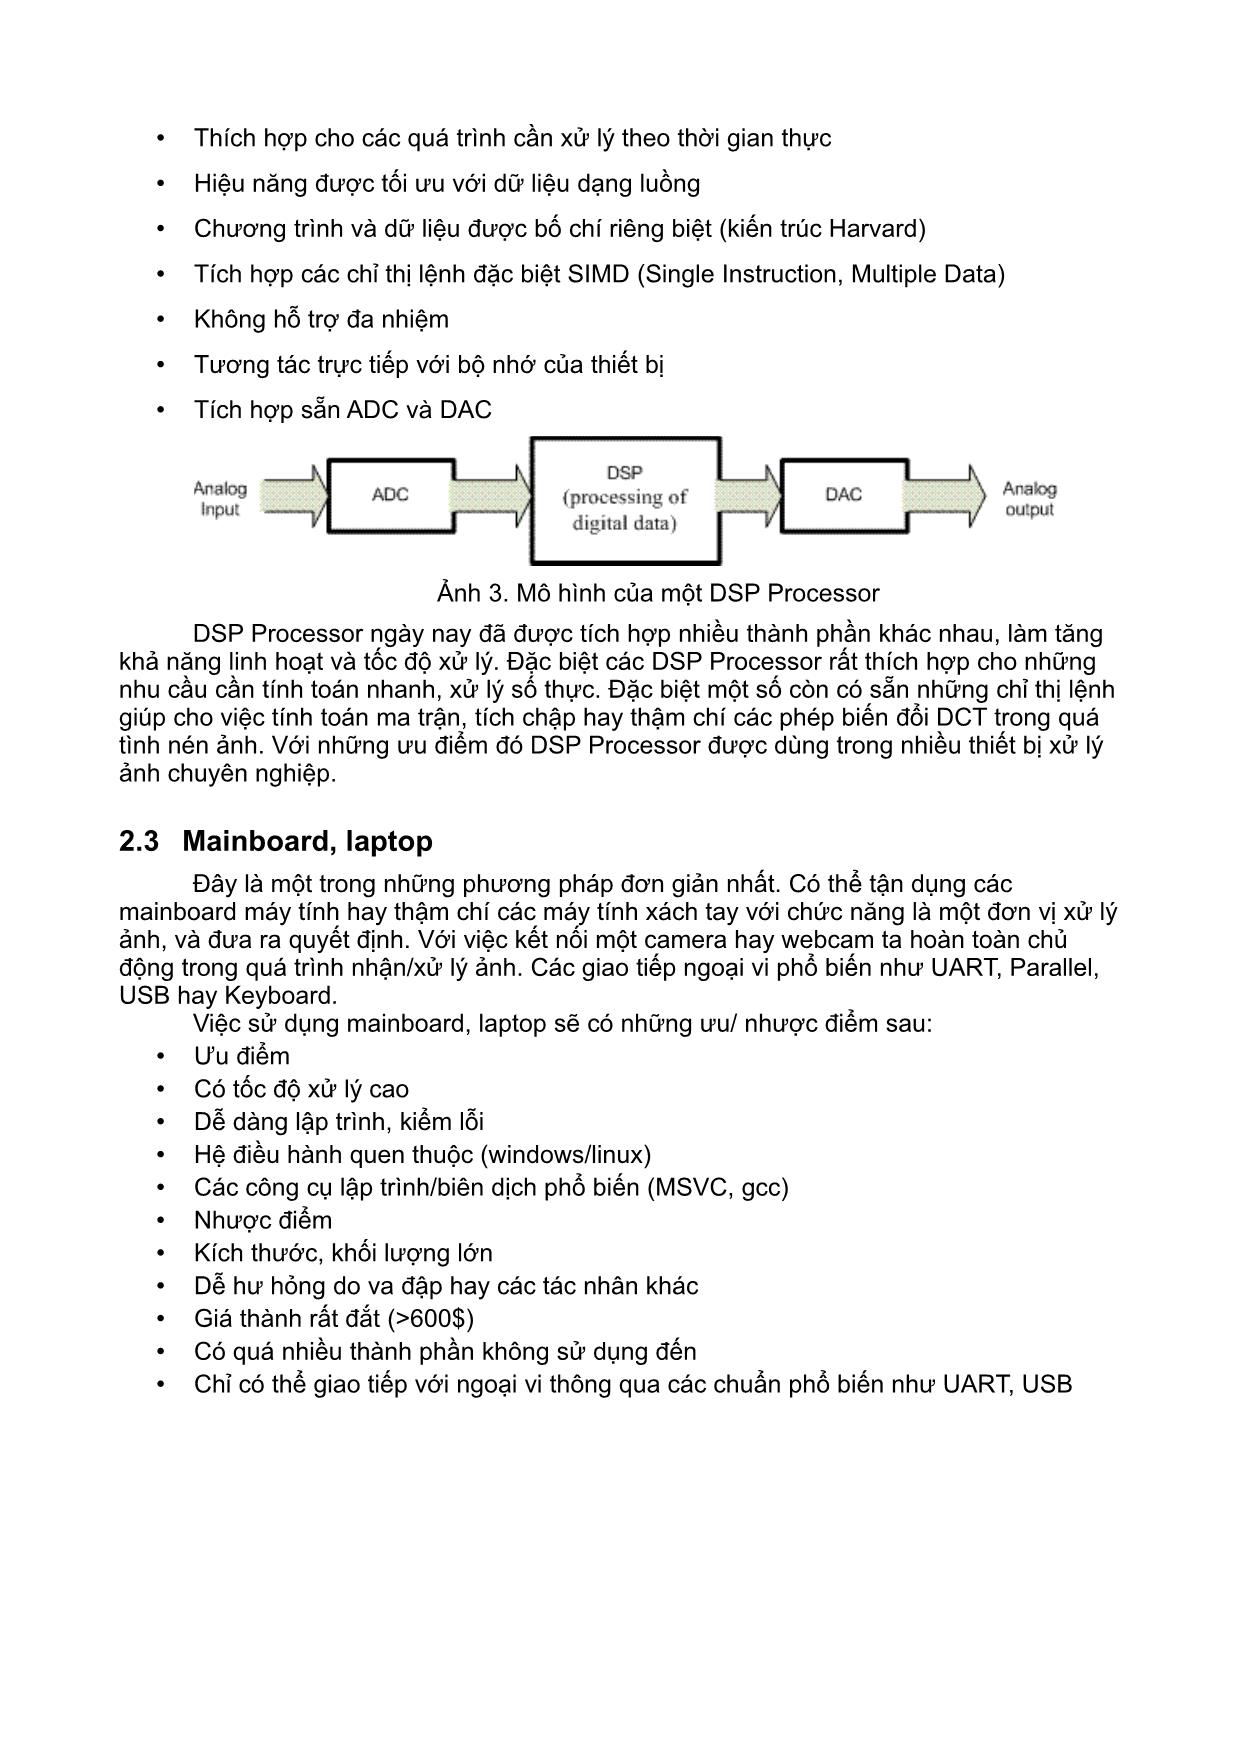 Giới thiệu giải pháp phần cứng cho bài toán thị giác máy trên nền linux nhúng trang 3